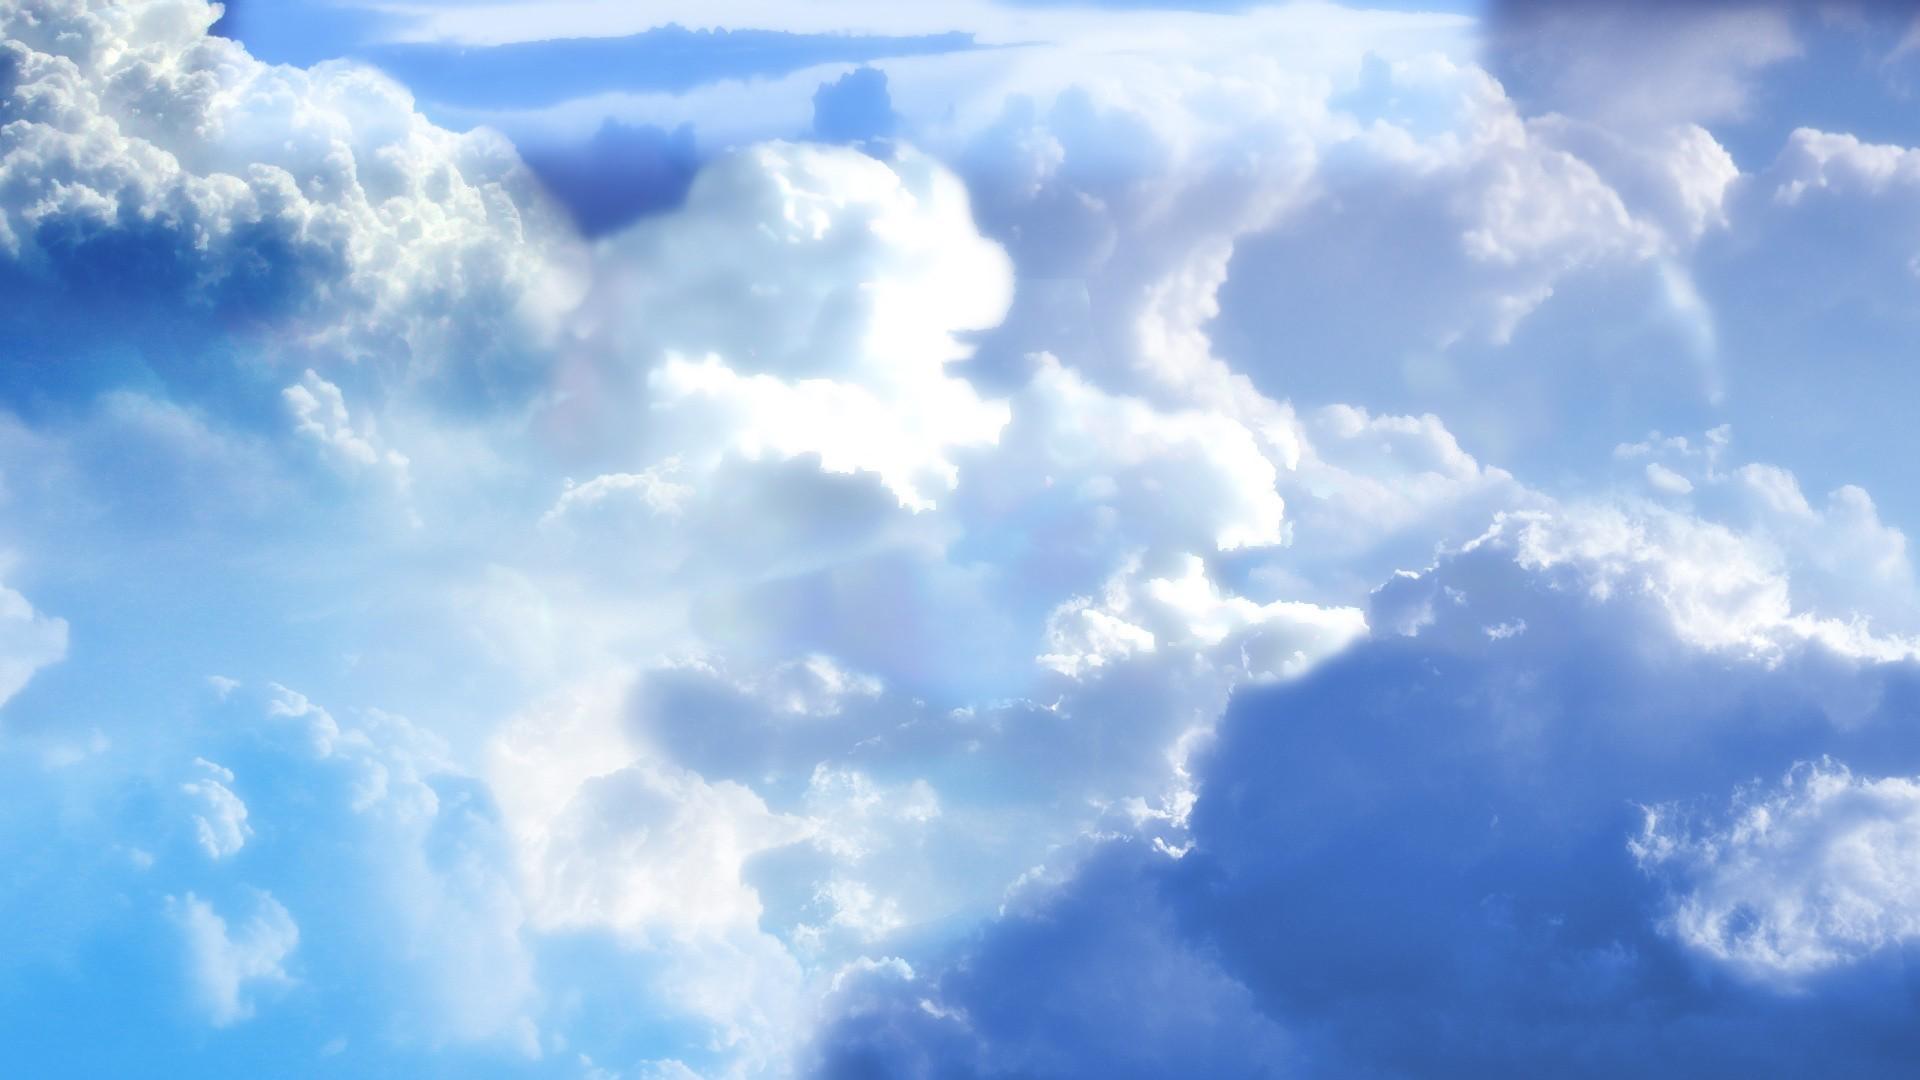 1920 x 1080 · jpeg - Desktop Sky Backgrounds | PixelsTalk